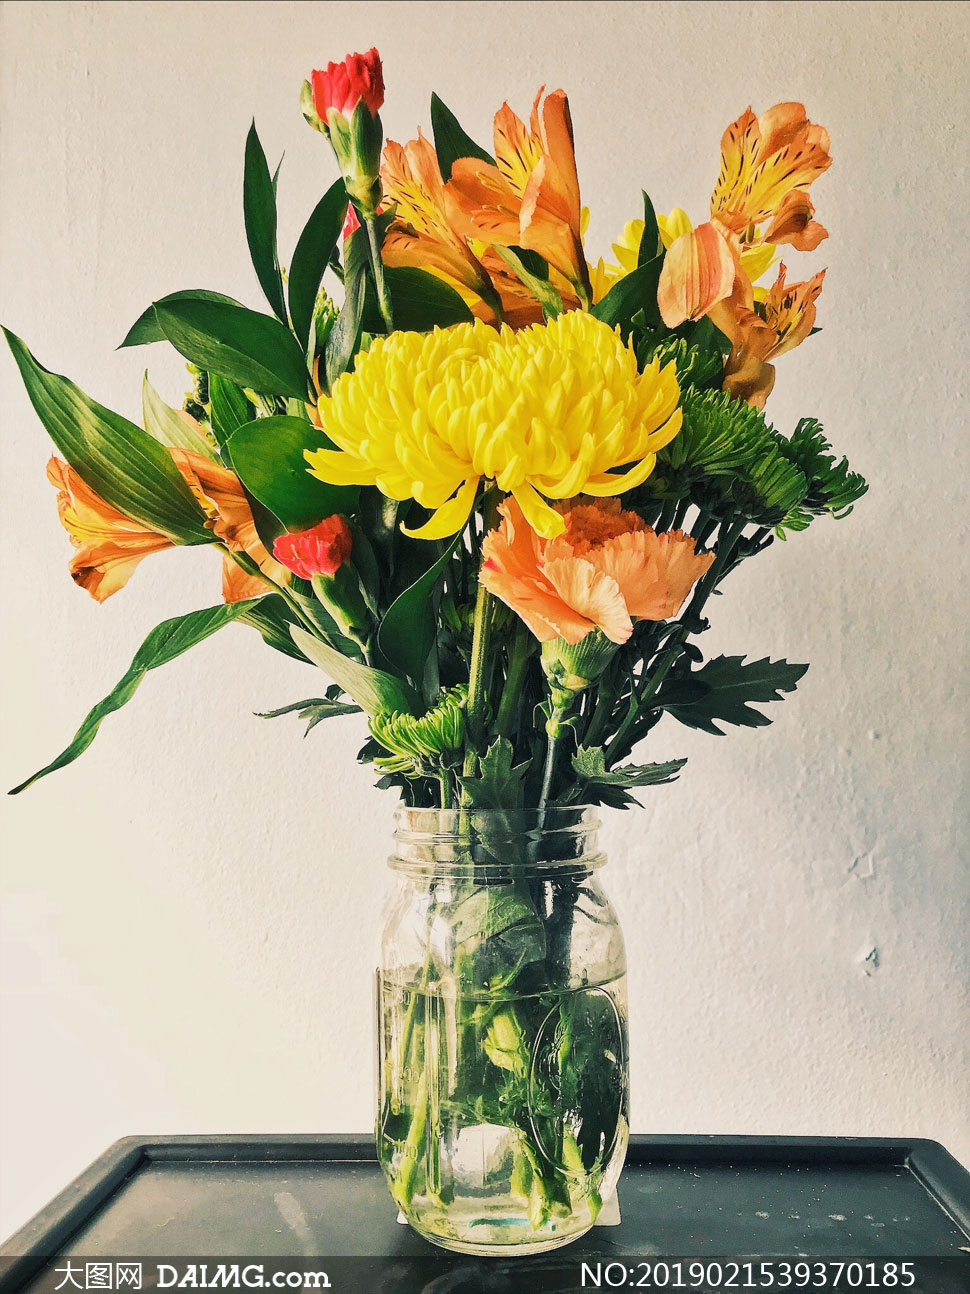 插在花瓶里的花朵特写摄影高清图片